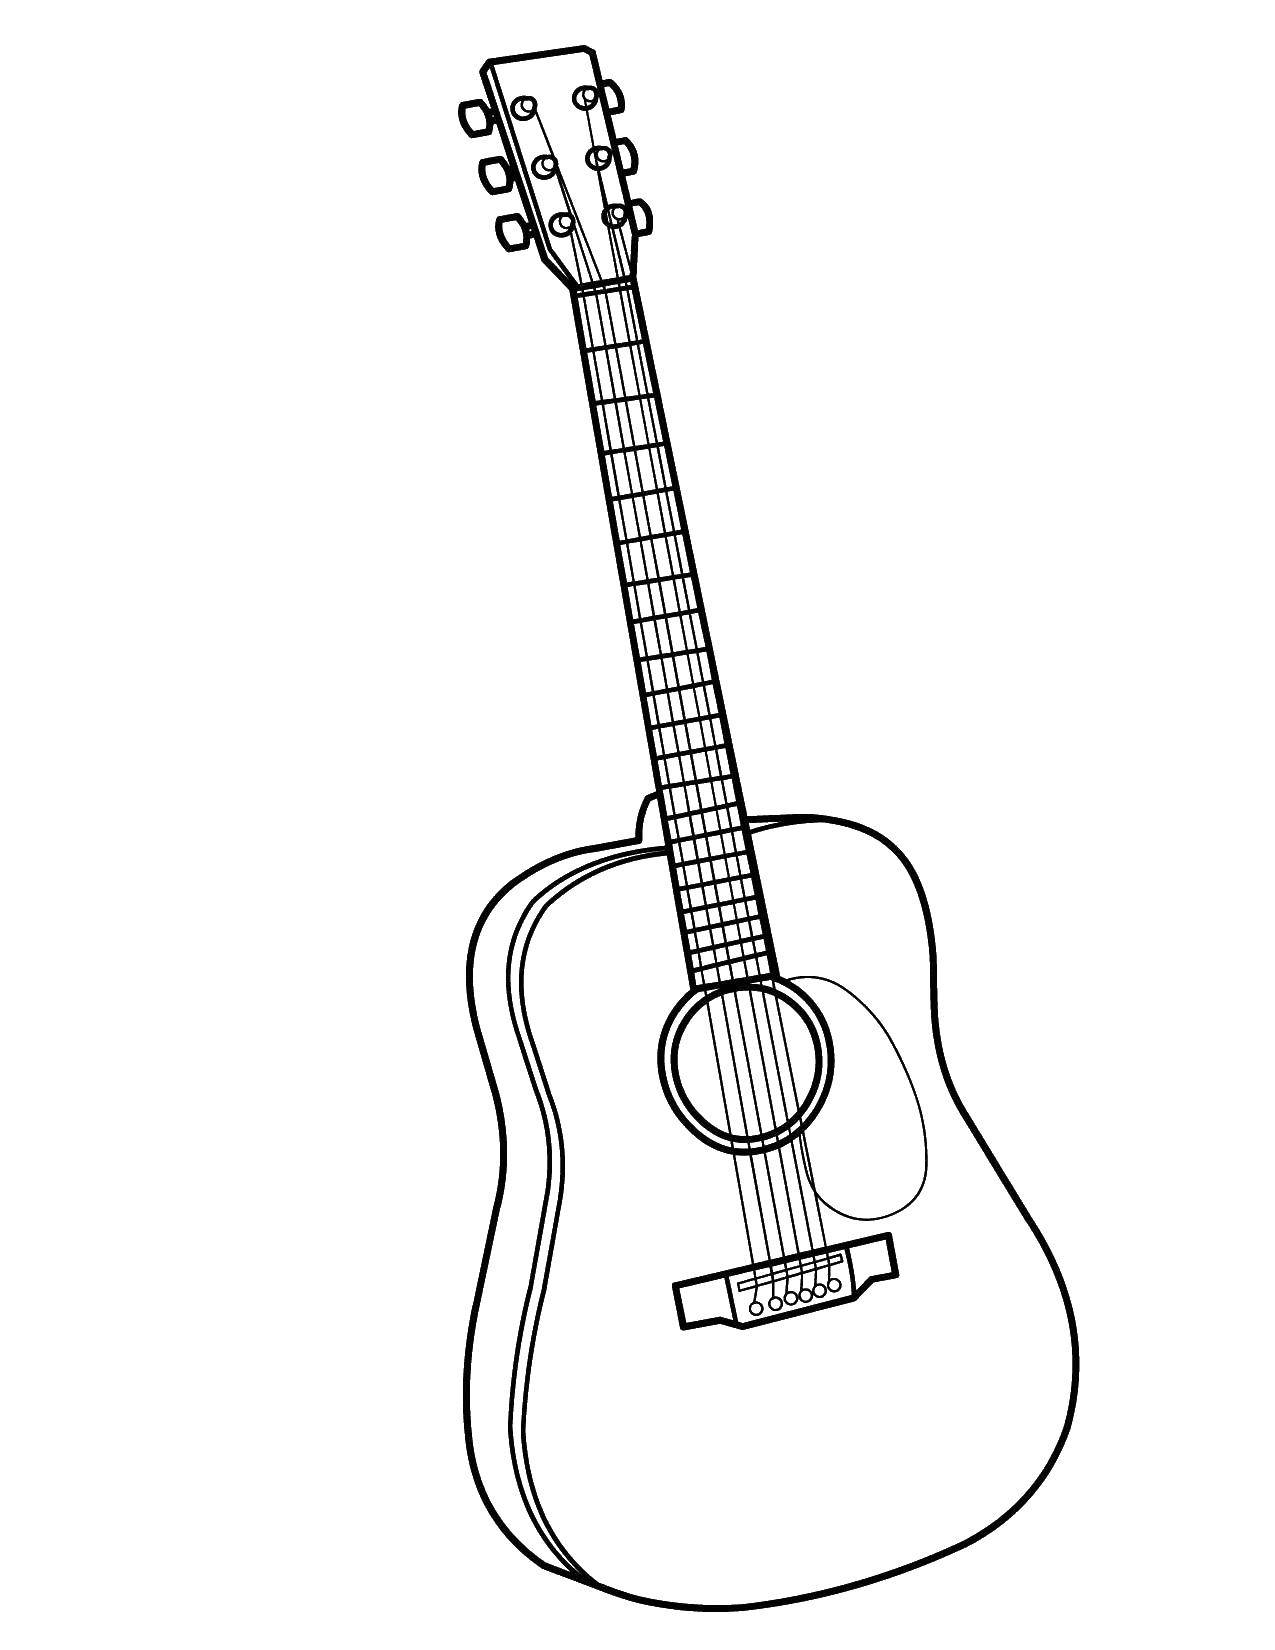 Название: Раскраска Струны гитары. Категория: музыкальные инструменты. Теги: Музыка, инструмент, музыкант, ноты.